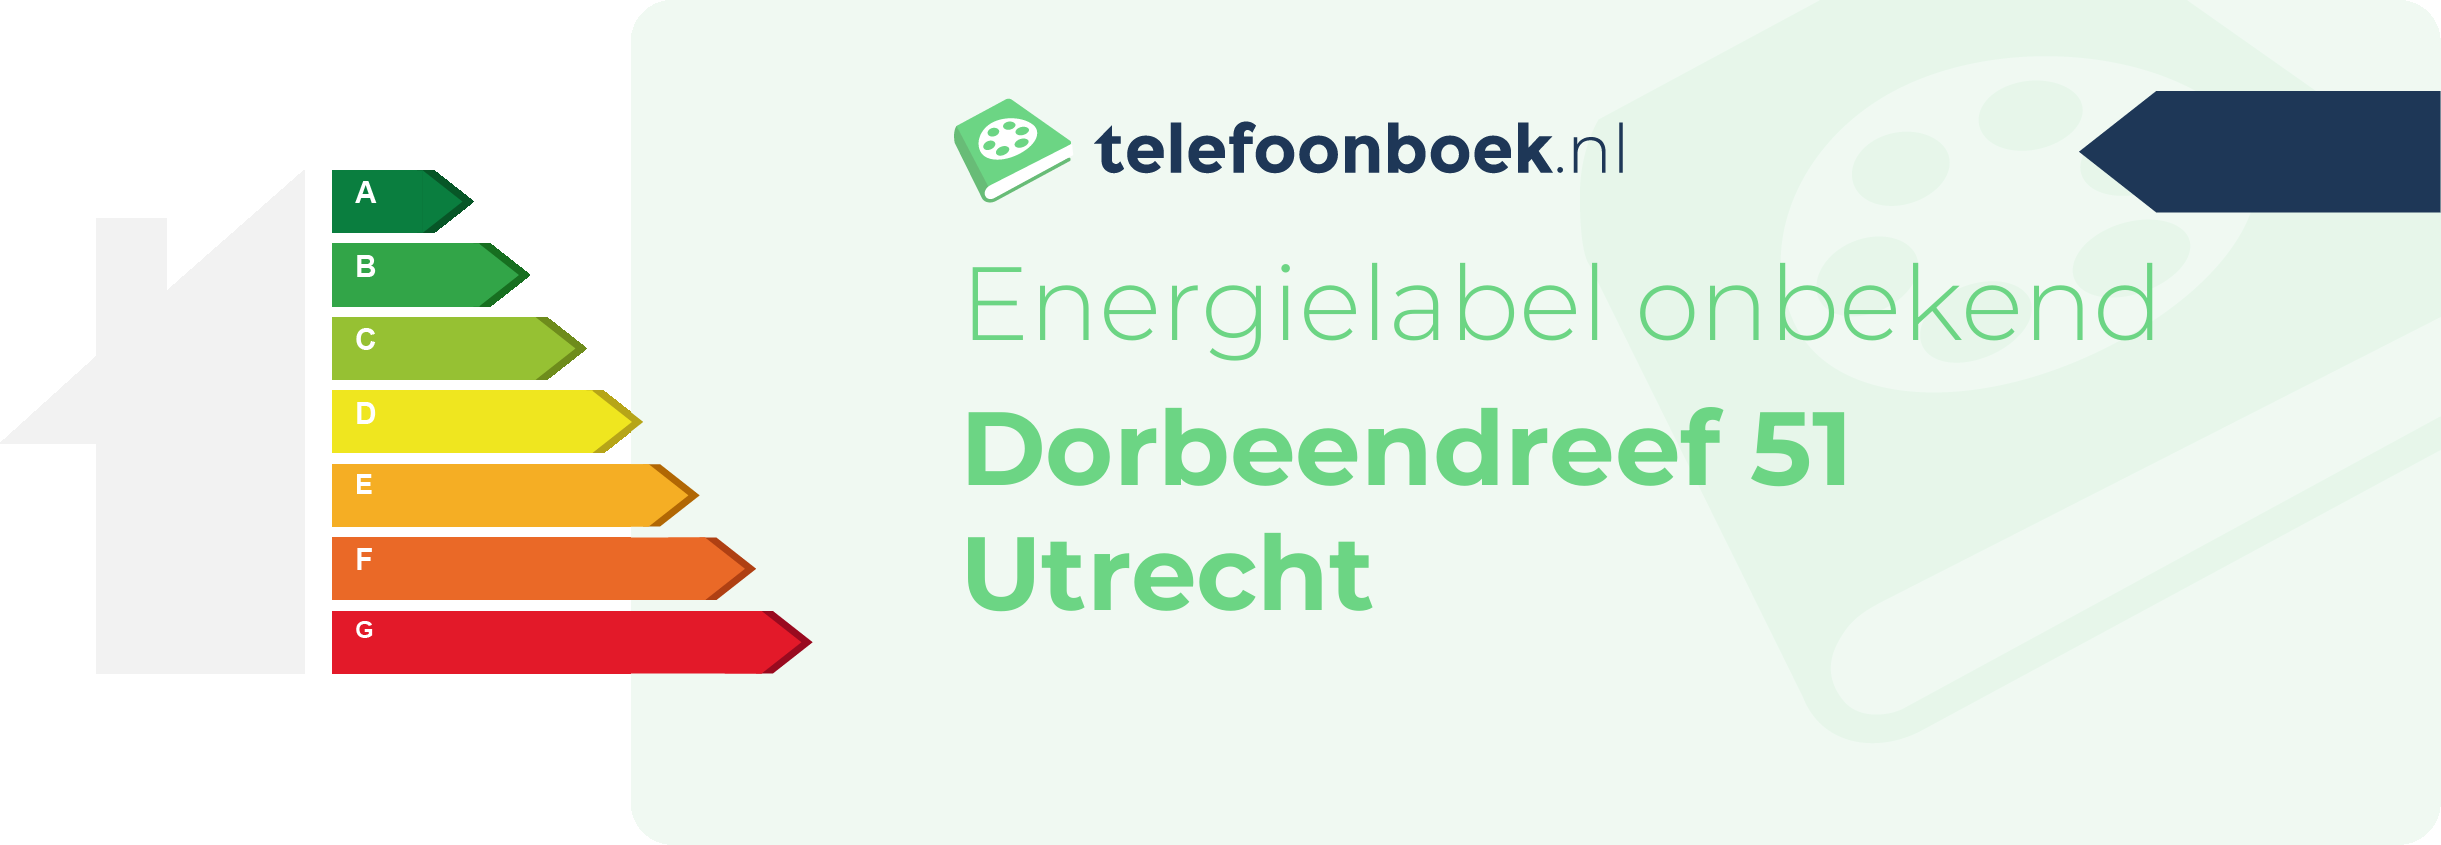 Energielabel Dorbeendreef 51 Utrecht